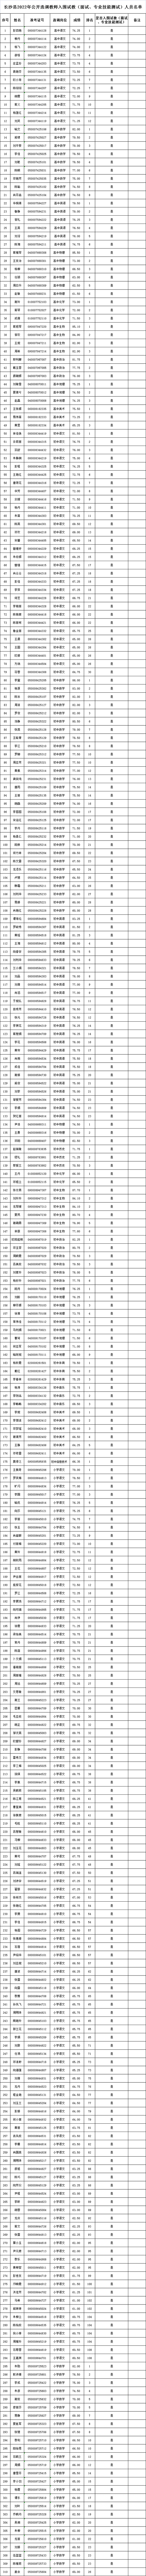 2022年长沙县公开招聘（选调）教师入围试教（面试、专业技能测试）人员名单公示(图1)